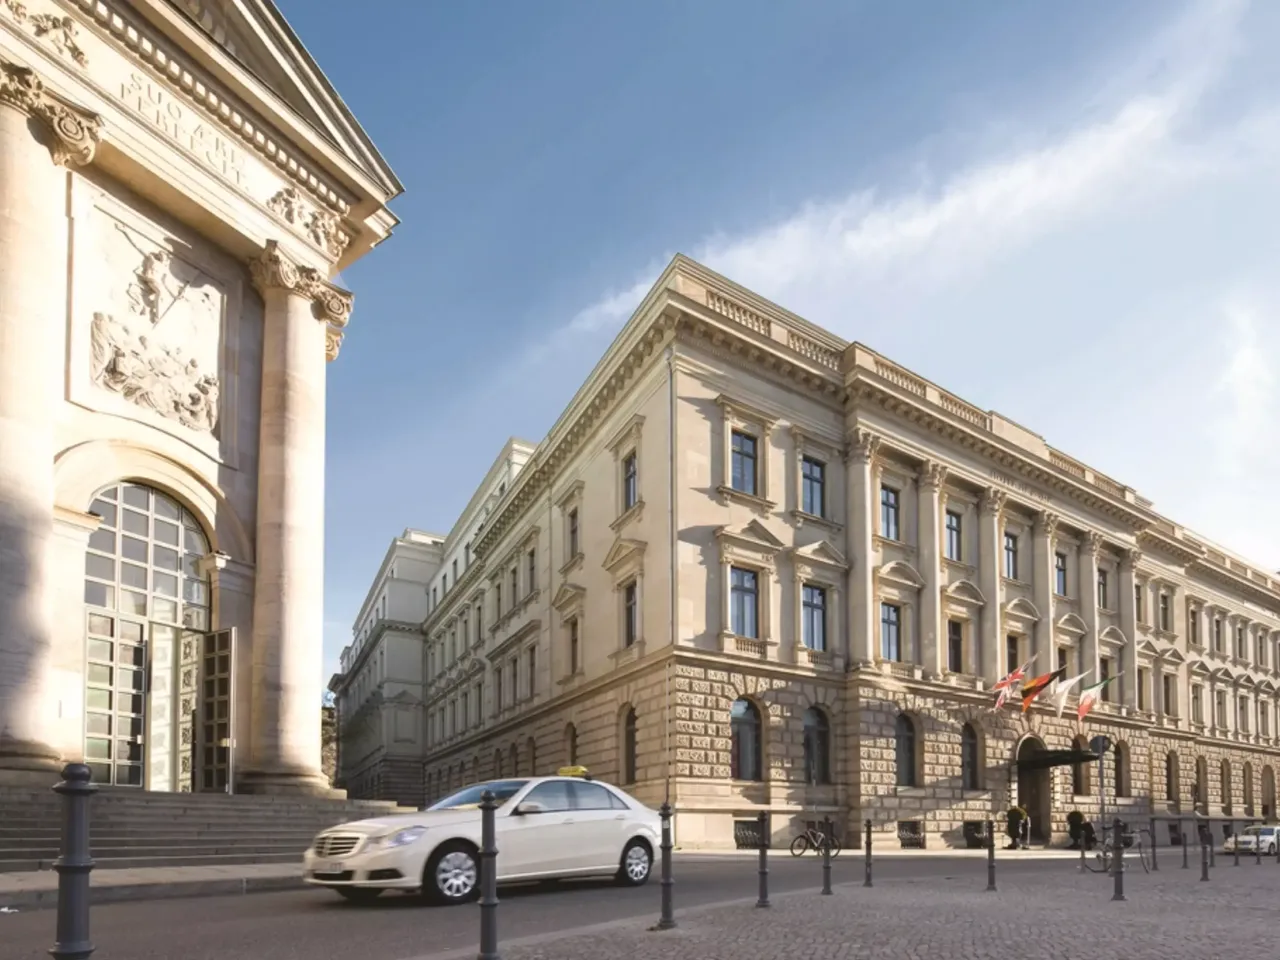 Außenansicht: Es wird die Fassade der hausInvest Immobilie Hotel de Rome in Berlin abgebildet